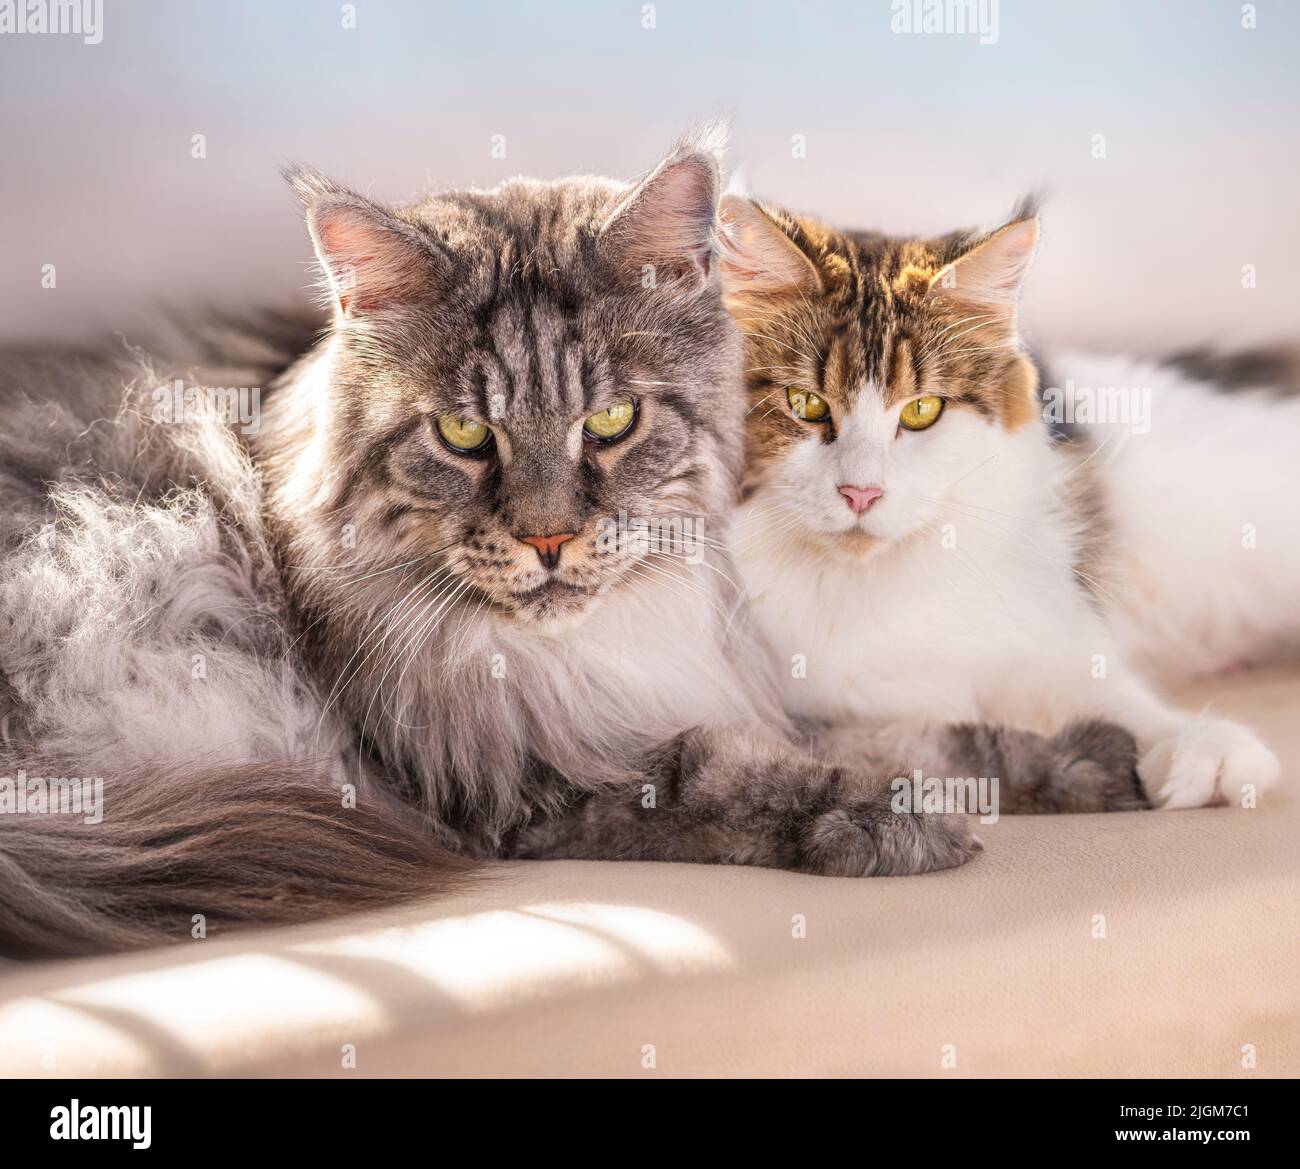 Par de Maine Coon Cat, adulto y femenino, que se encuentran juntos EN EL SOFÁ Foto de stock